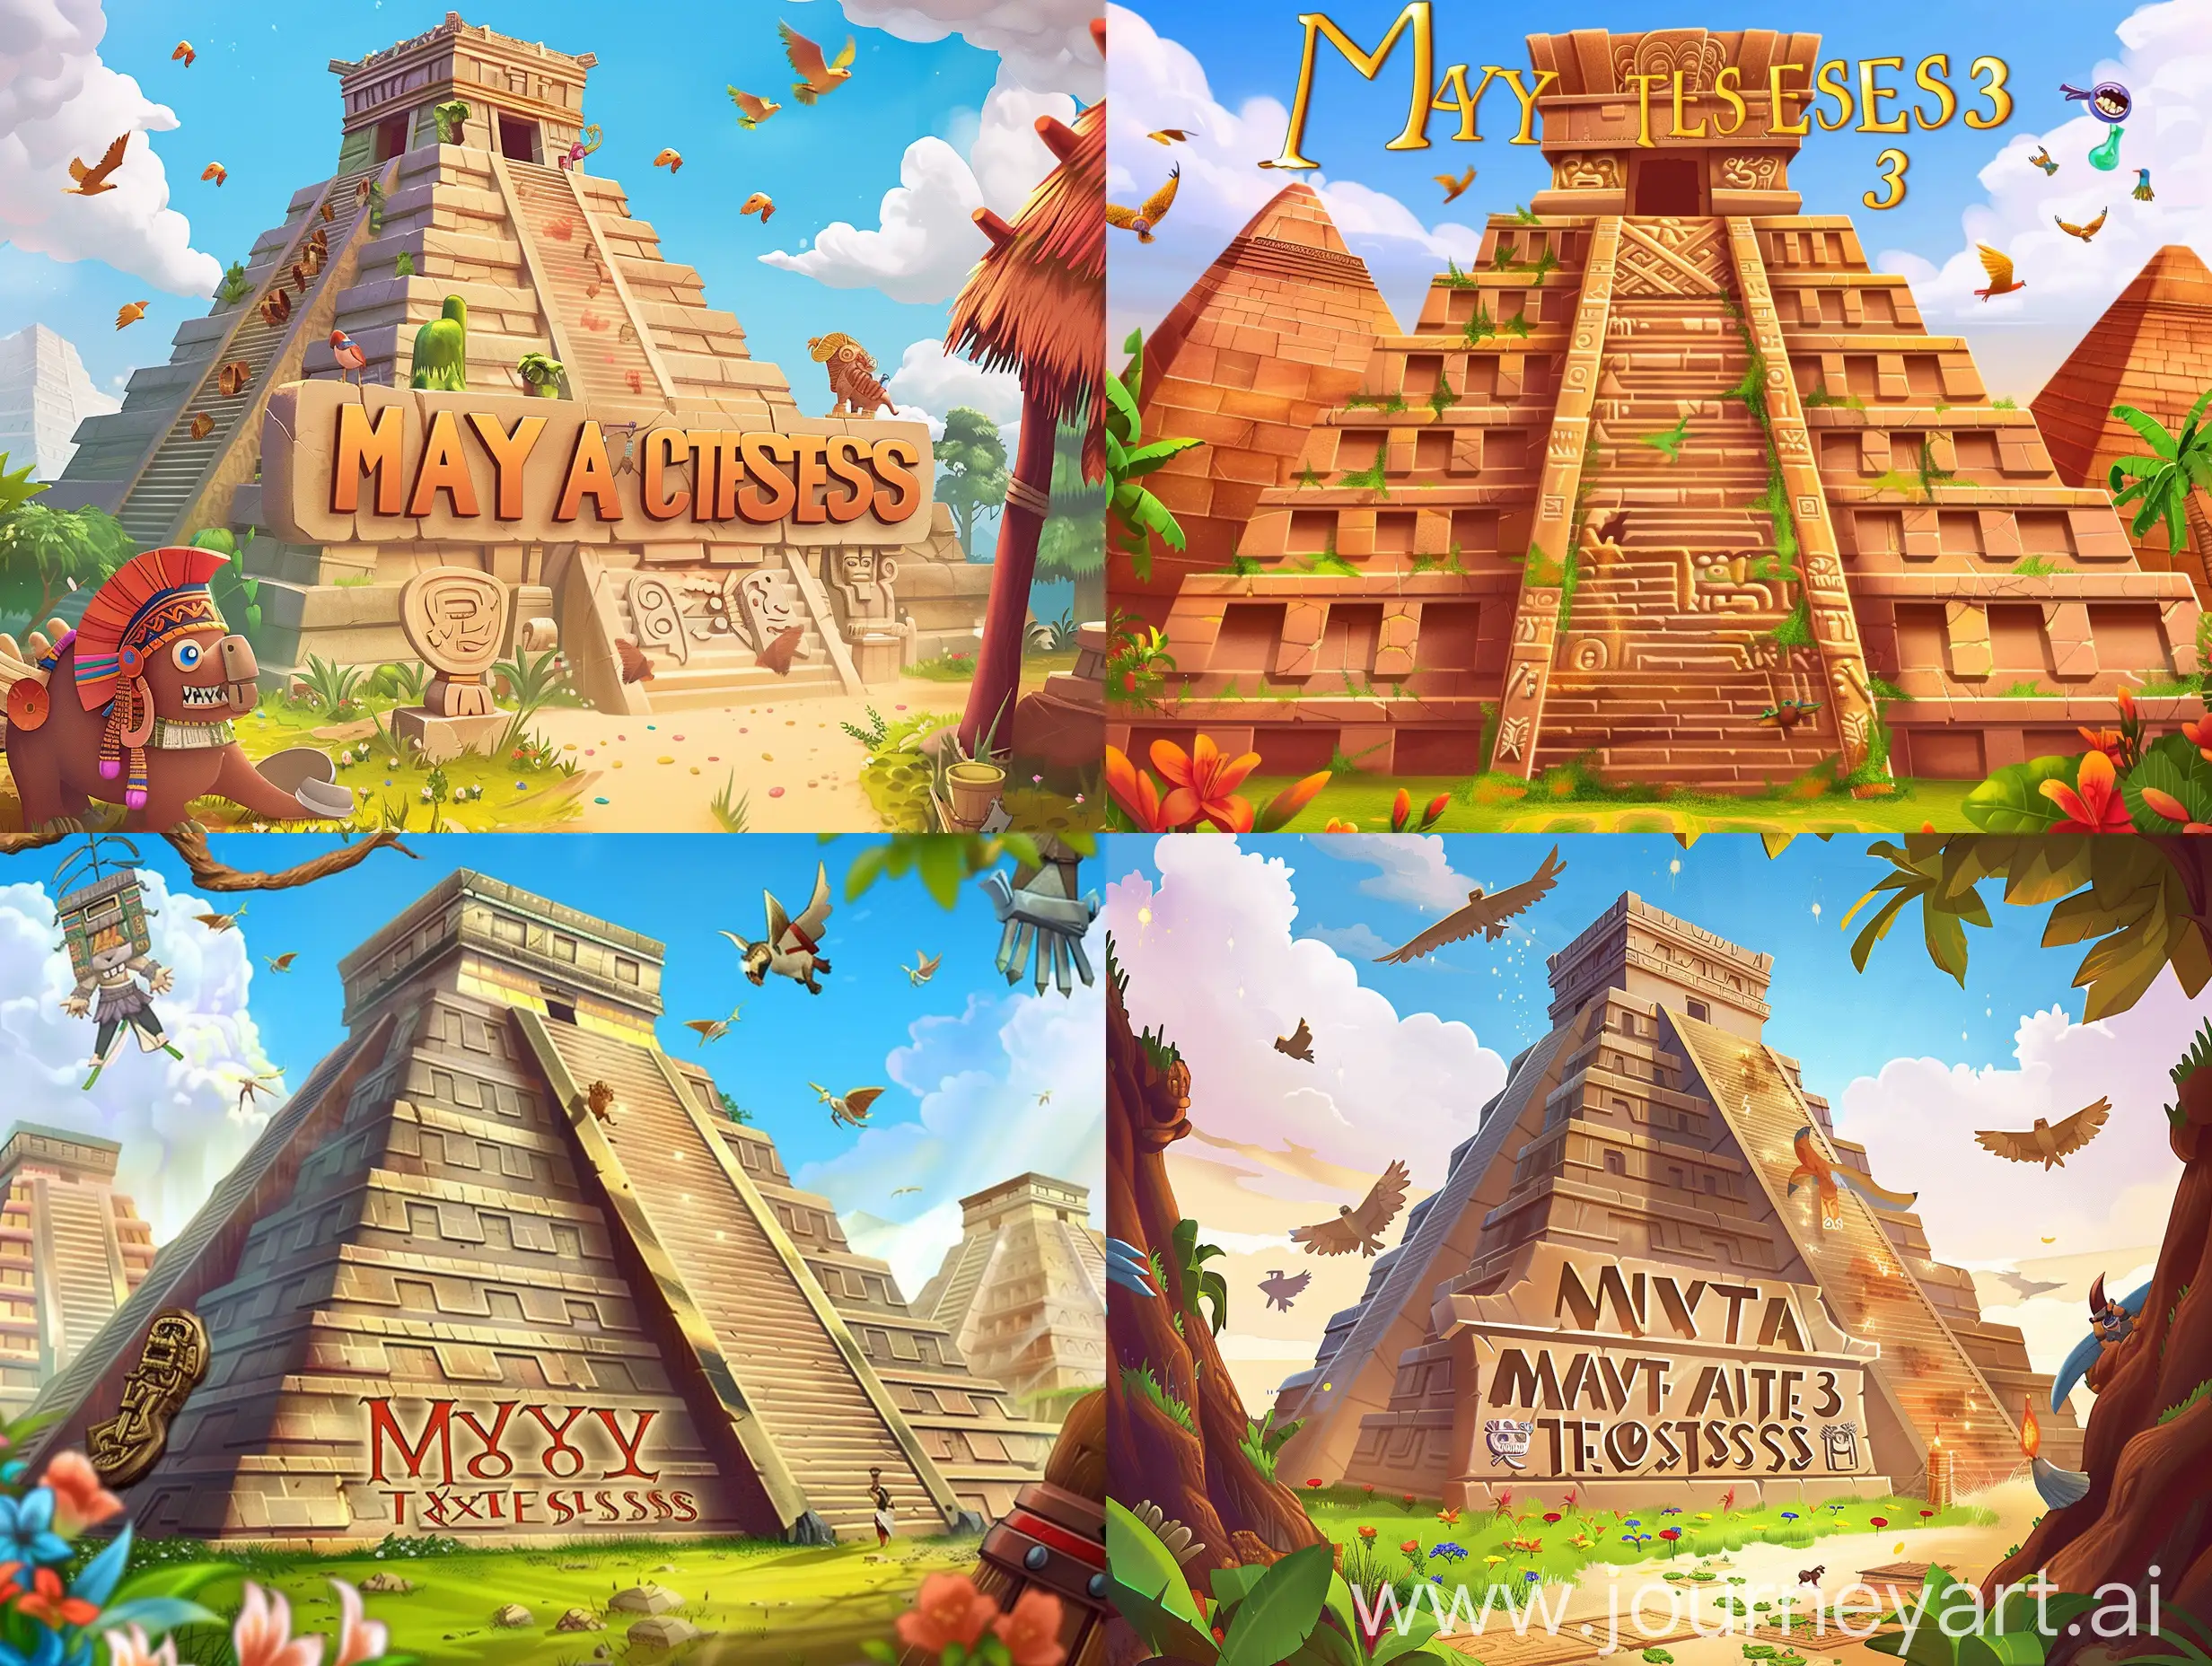 Computer game cover, Mayan pyramids, cute, match 3, "Maya Treasures" inscription